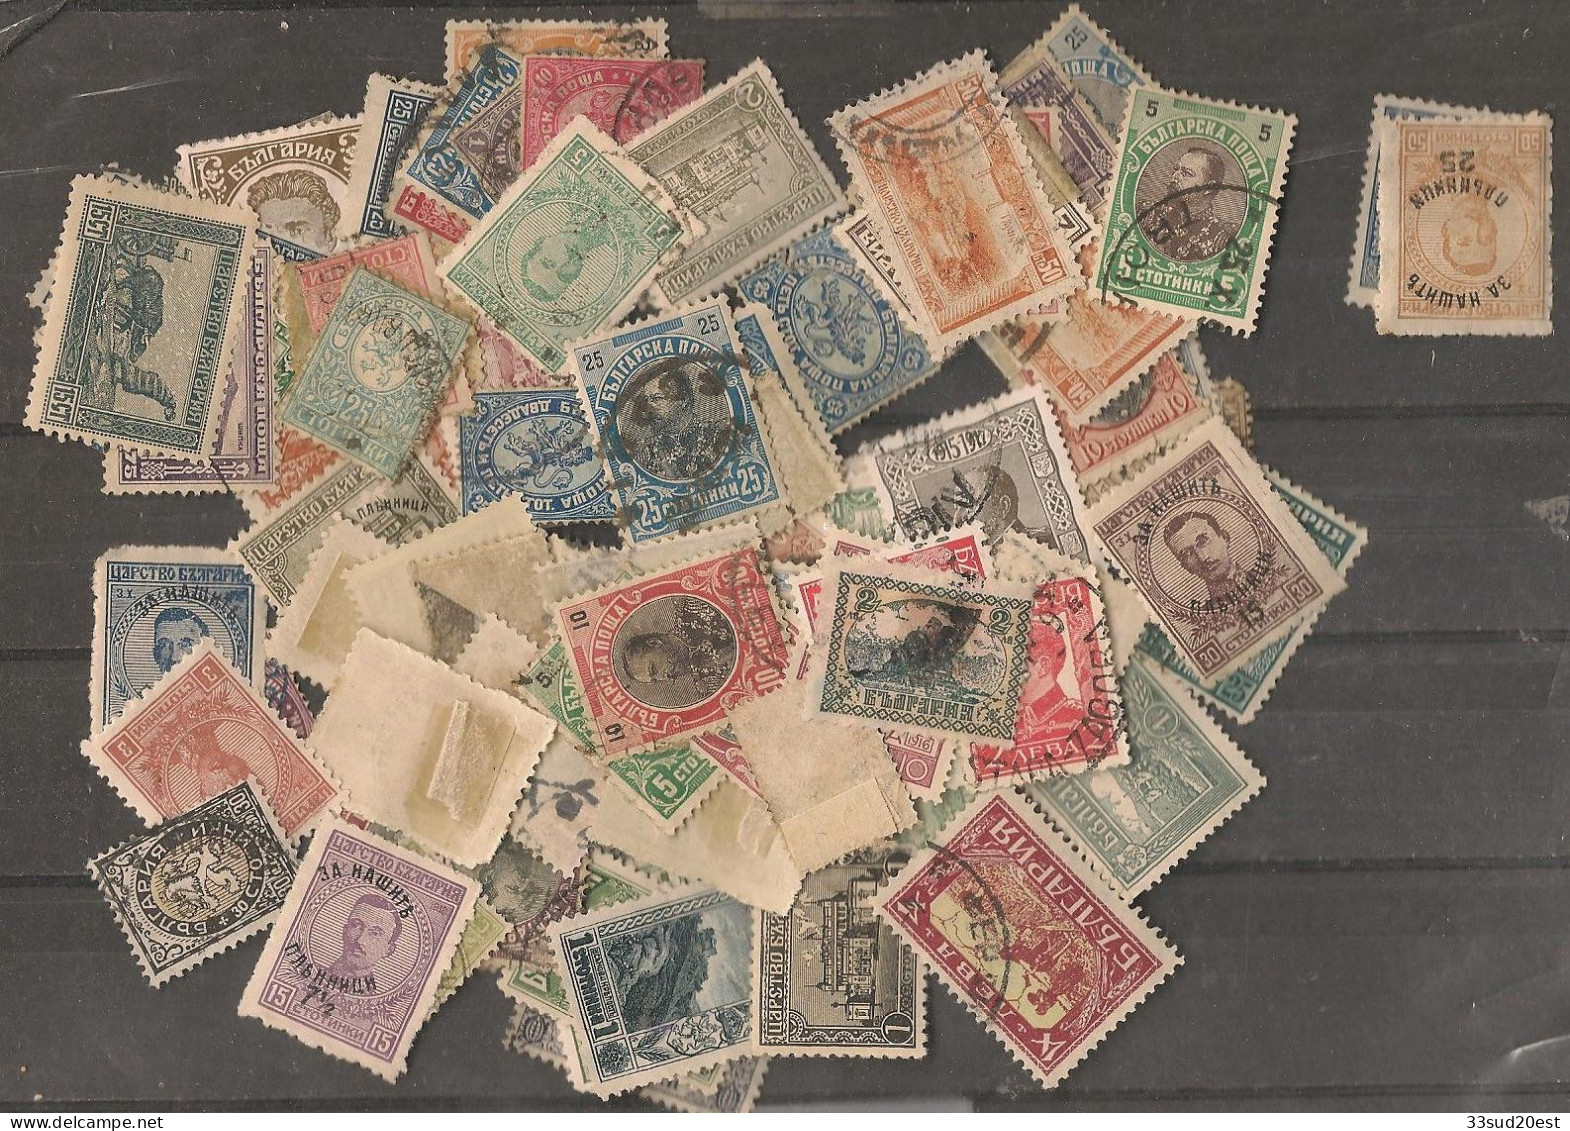 Lot De Timbres Anciens De Bulgarie (8 Grammes) - Lots & Kiloware (mixtures) - Max. 999 Stamps